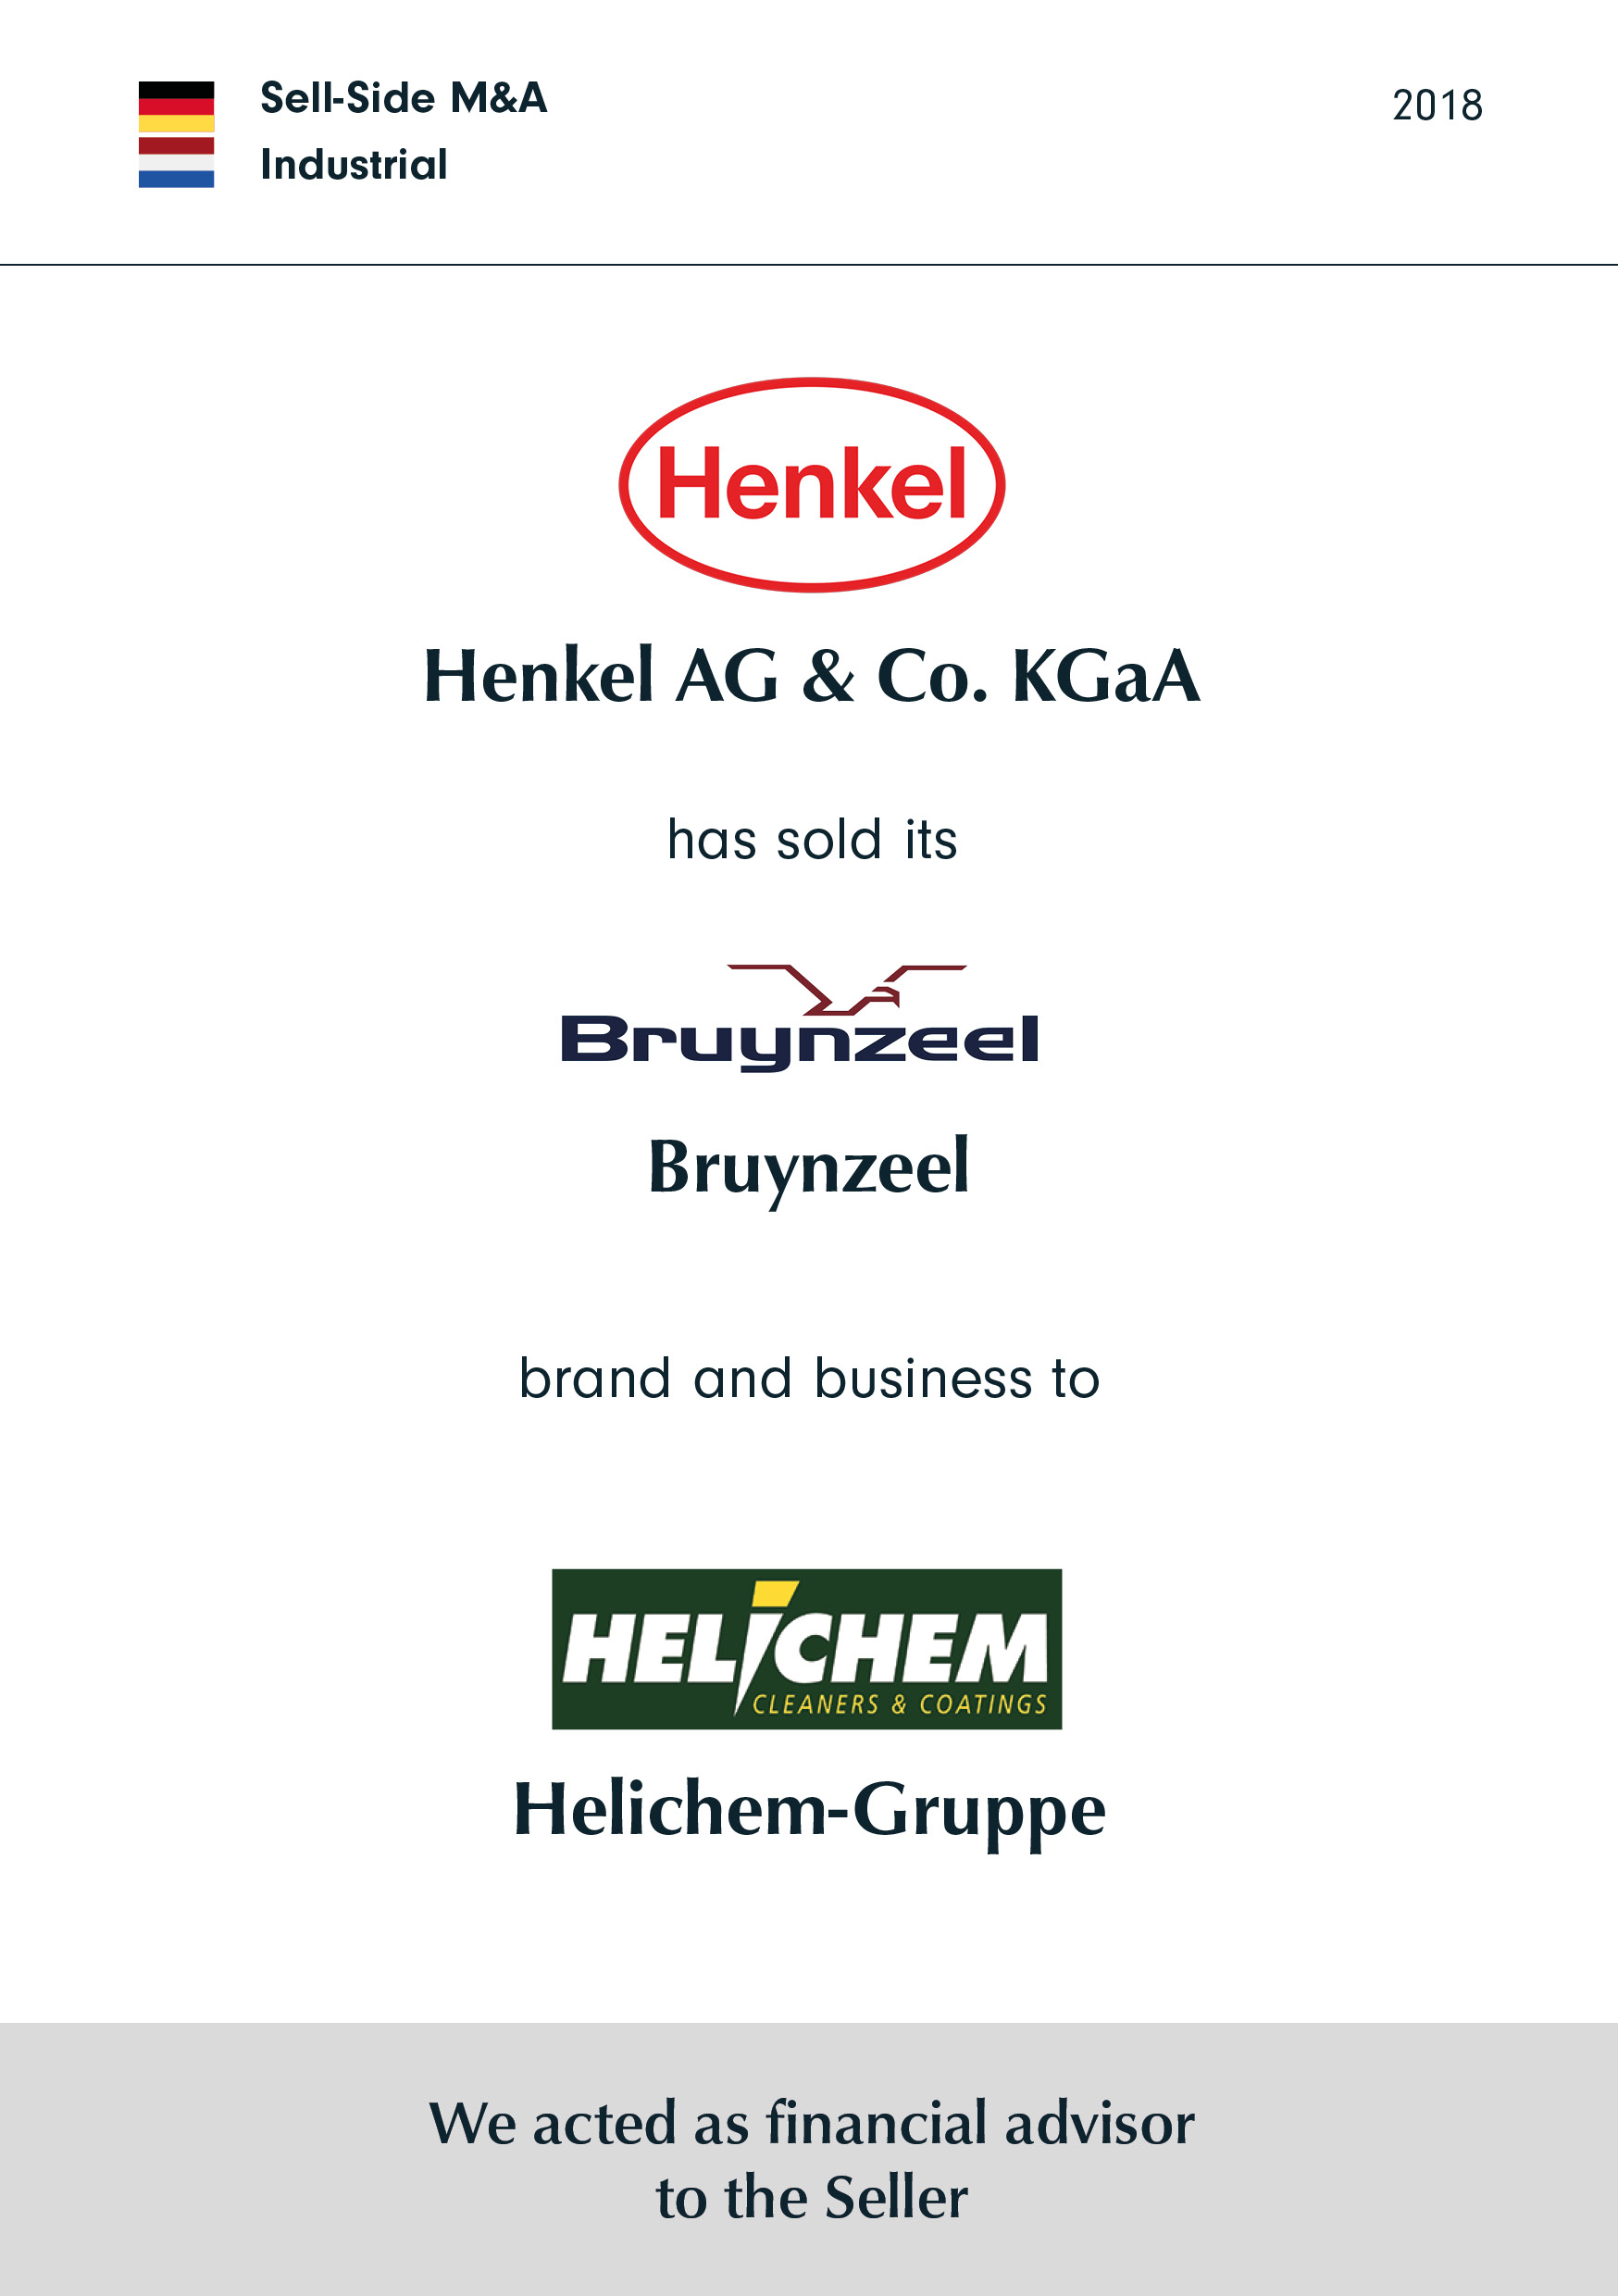 Henkel hat seine Marke und sein Geschäft Bruynzeel verkauft an Helichem